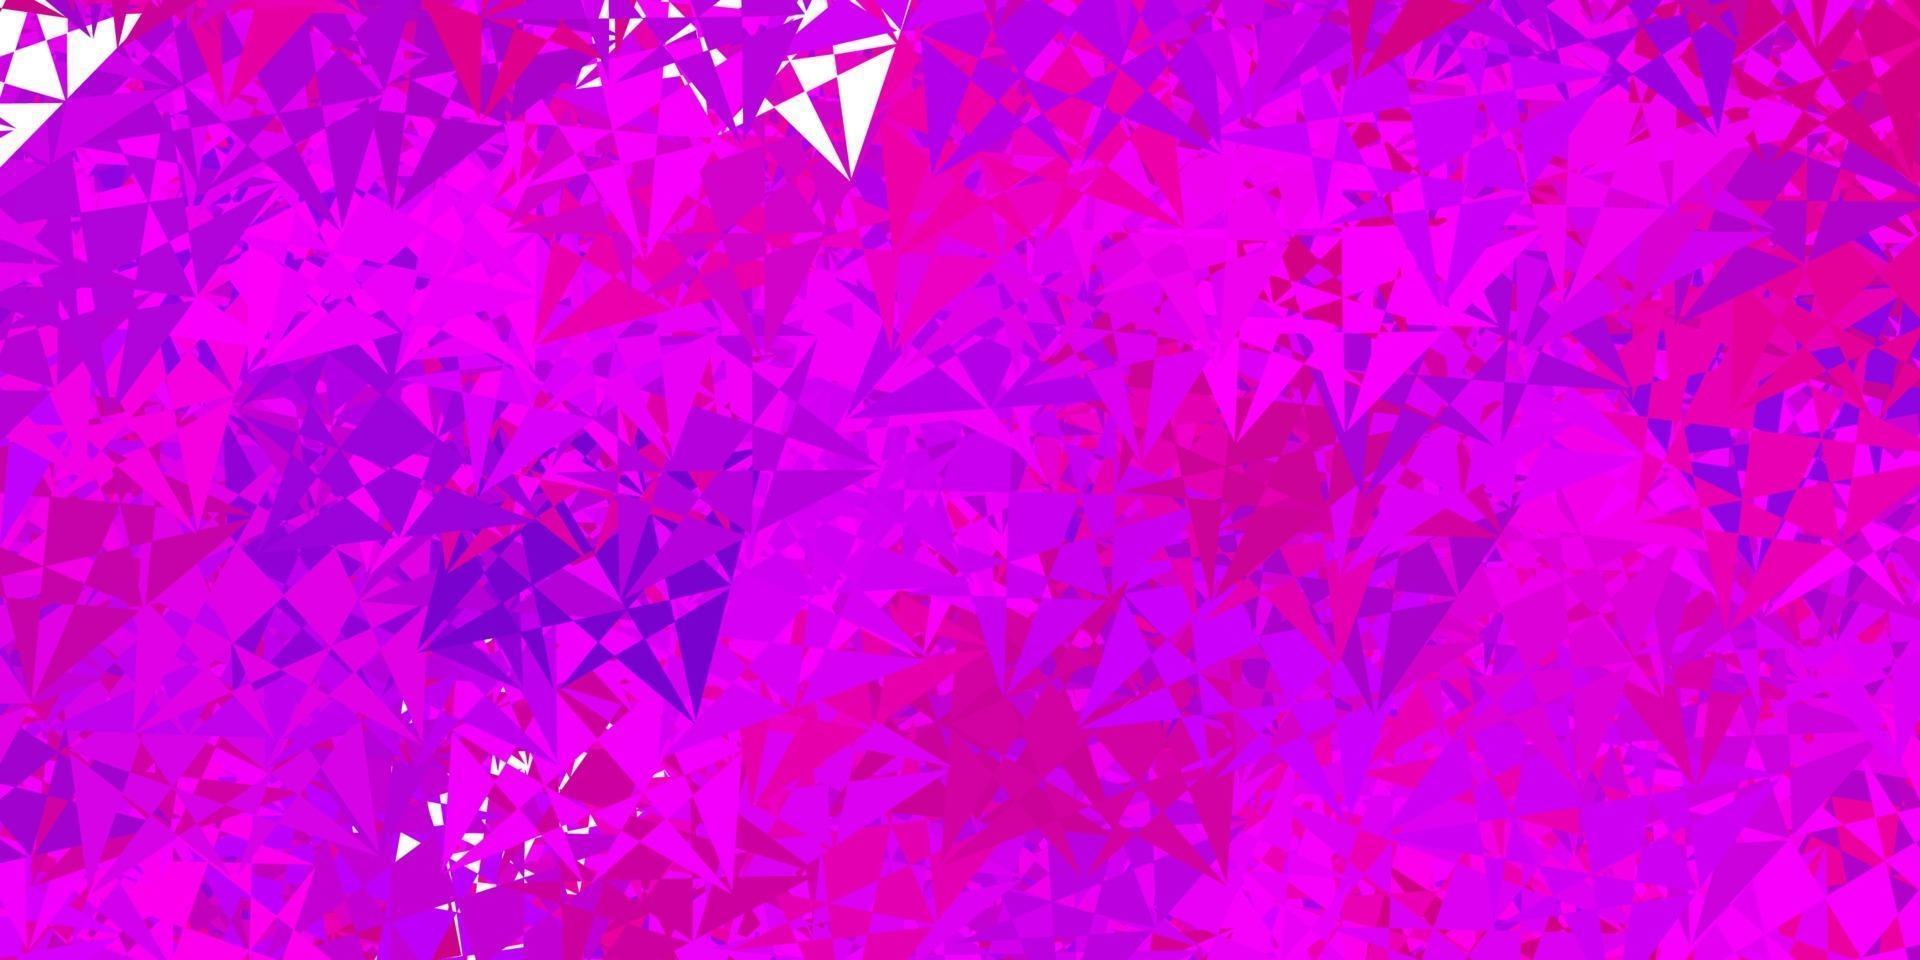 mörk lila vektor bakgrund med trianglar.